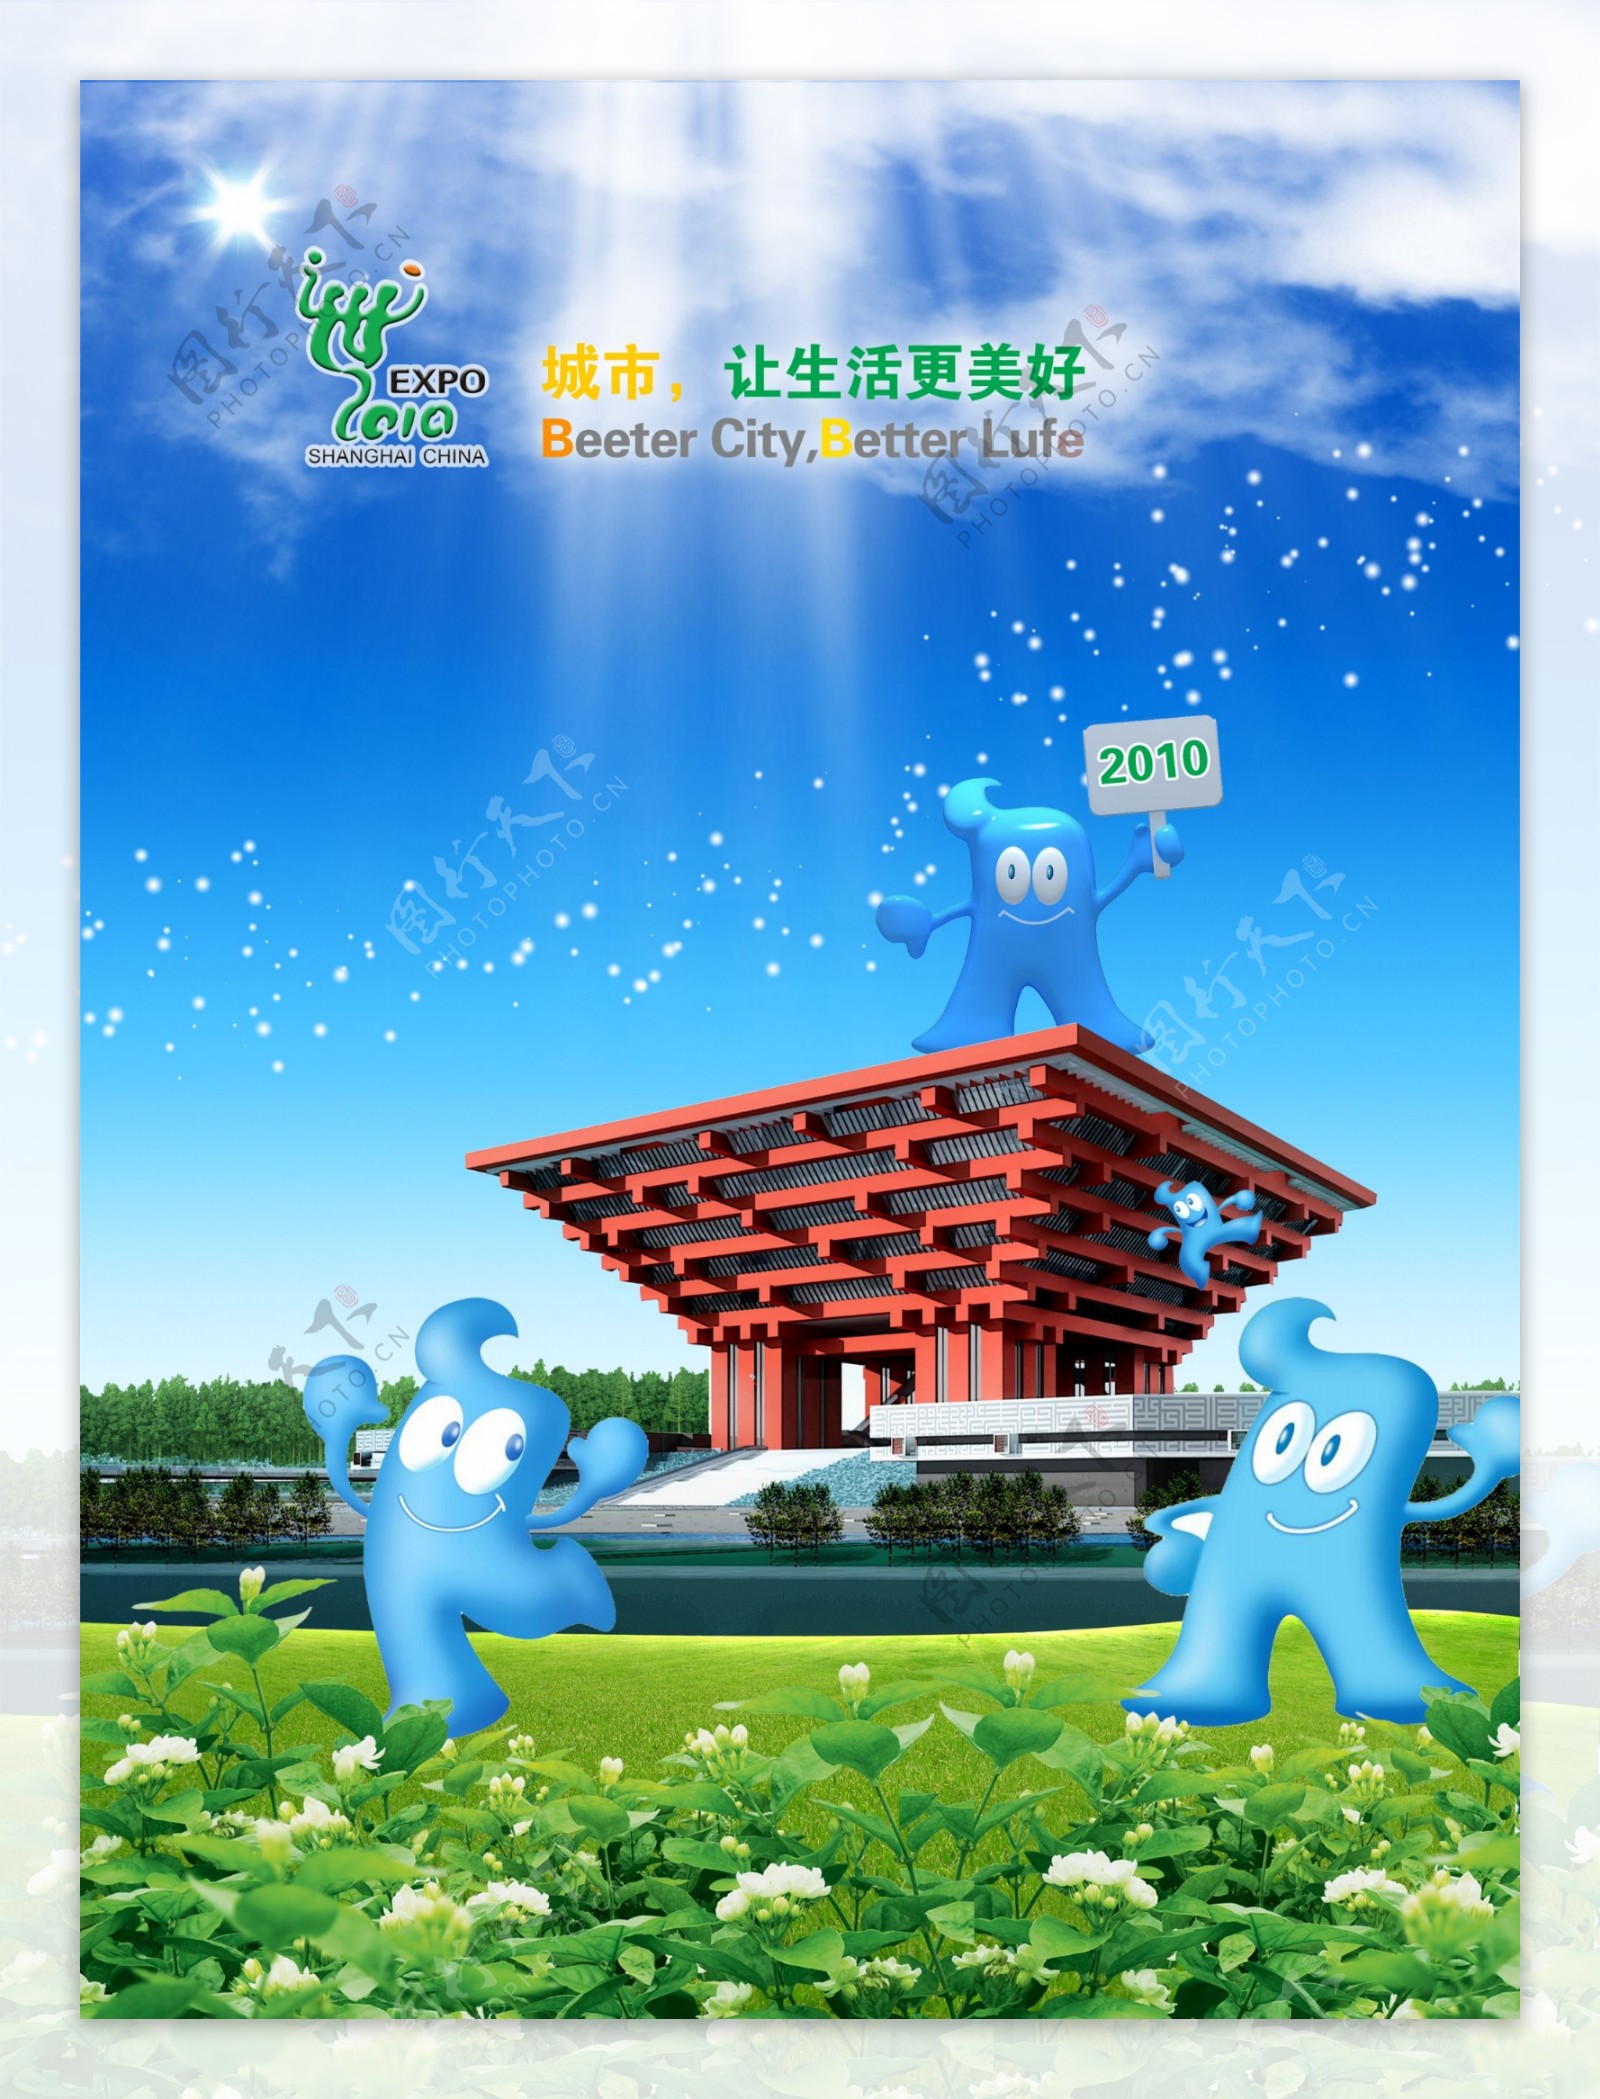 上海世博会标志下的广告语英文翻译错误图片